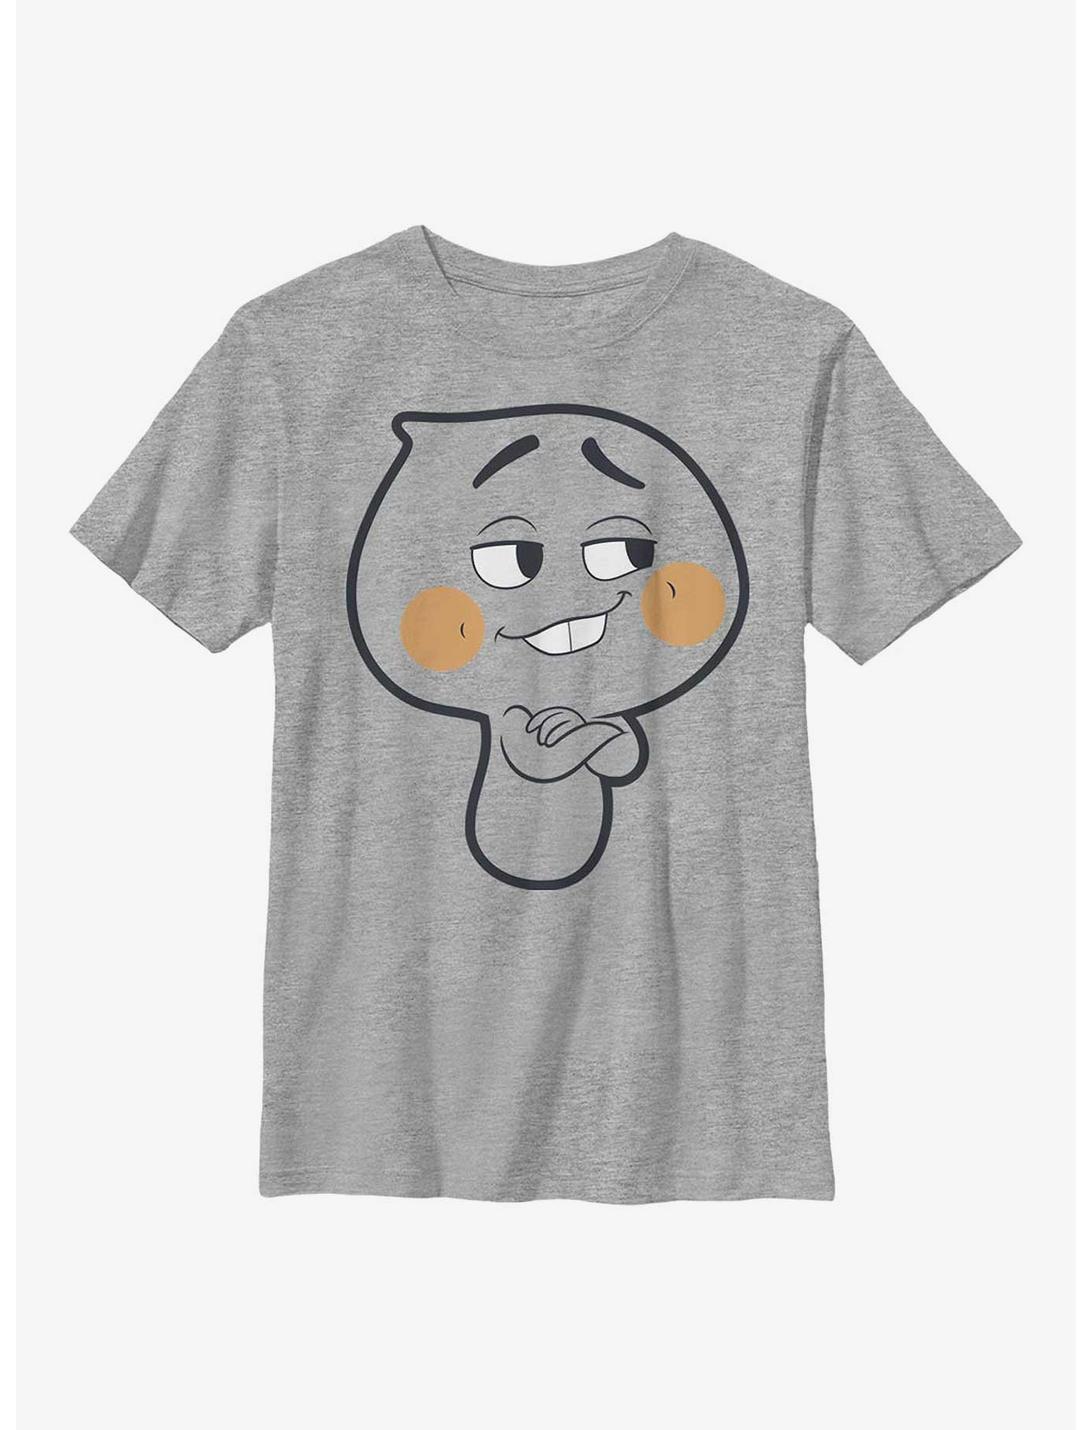 Disney Pixar Soul 22 Big Face Youth T-Shirt, ATH HTR, hi-res